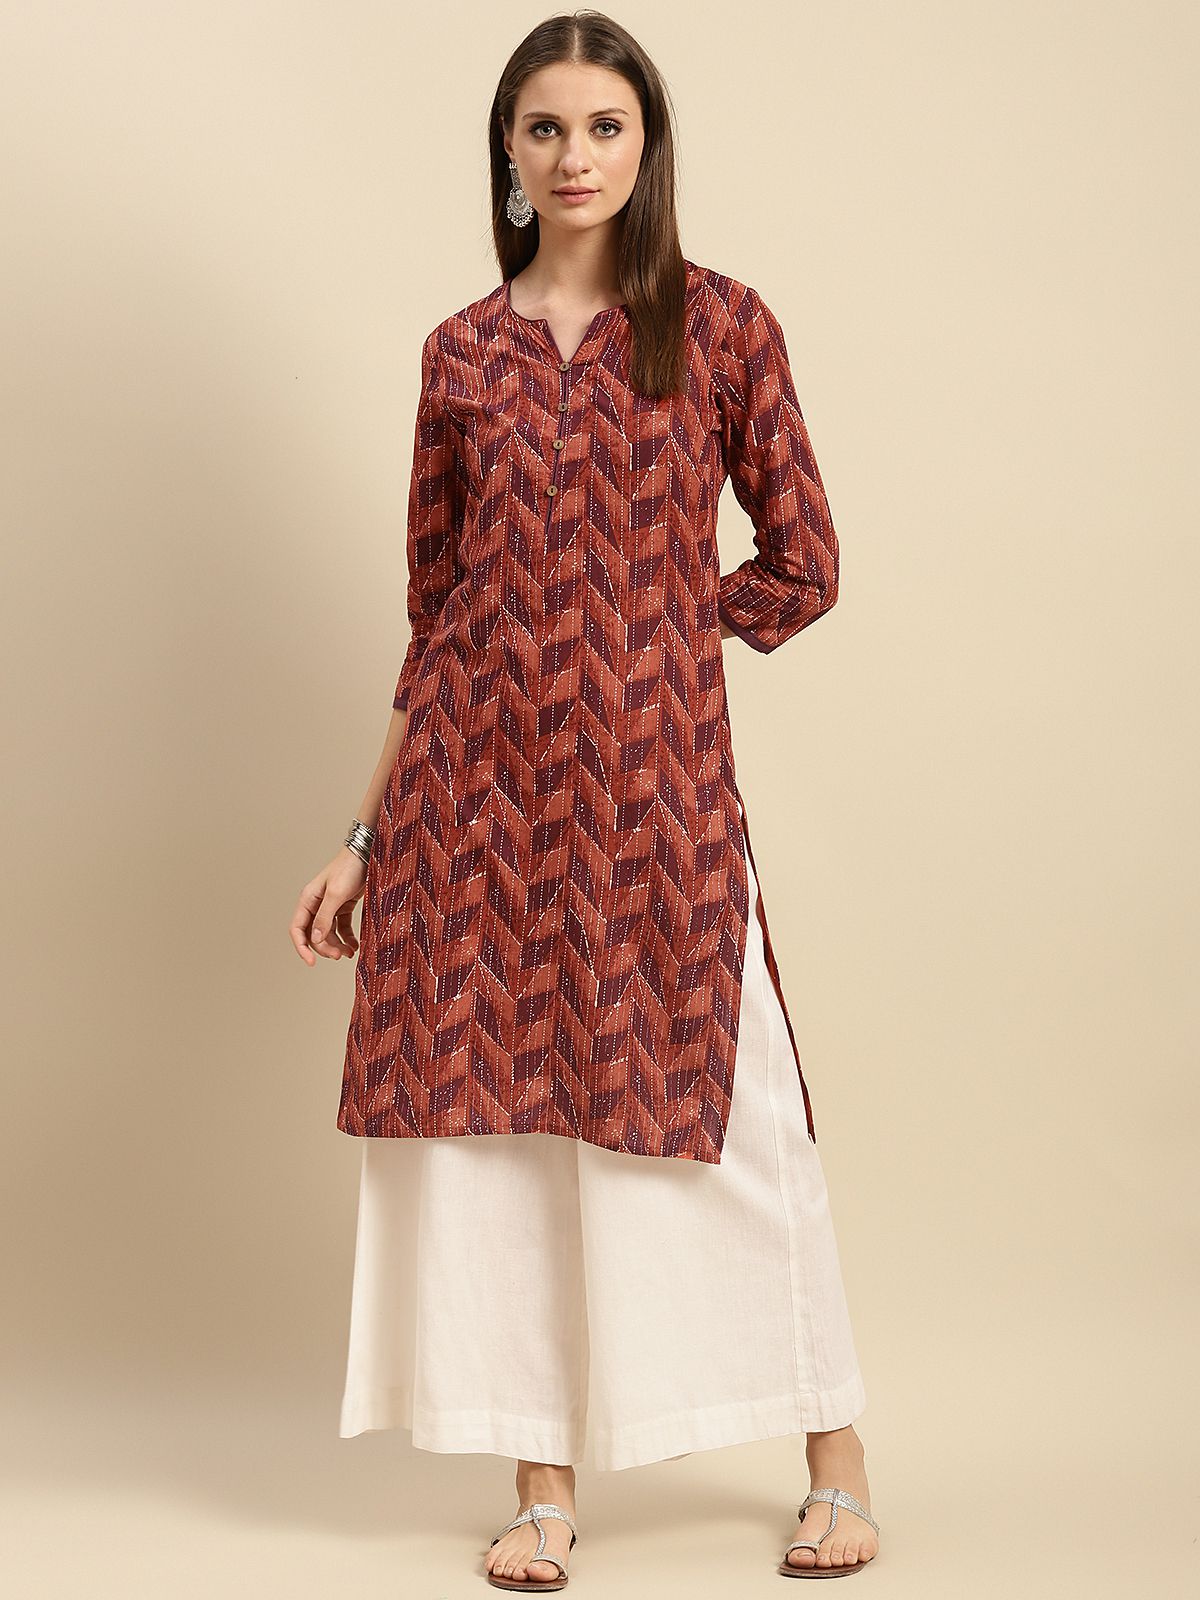     			Rangita Women 100% Cotton Peach Geometric printed Knee length straight kurti